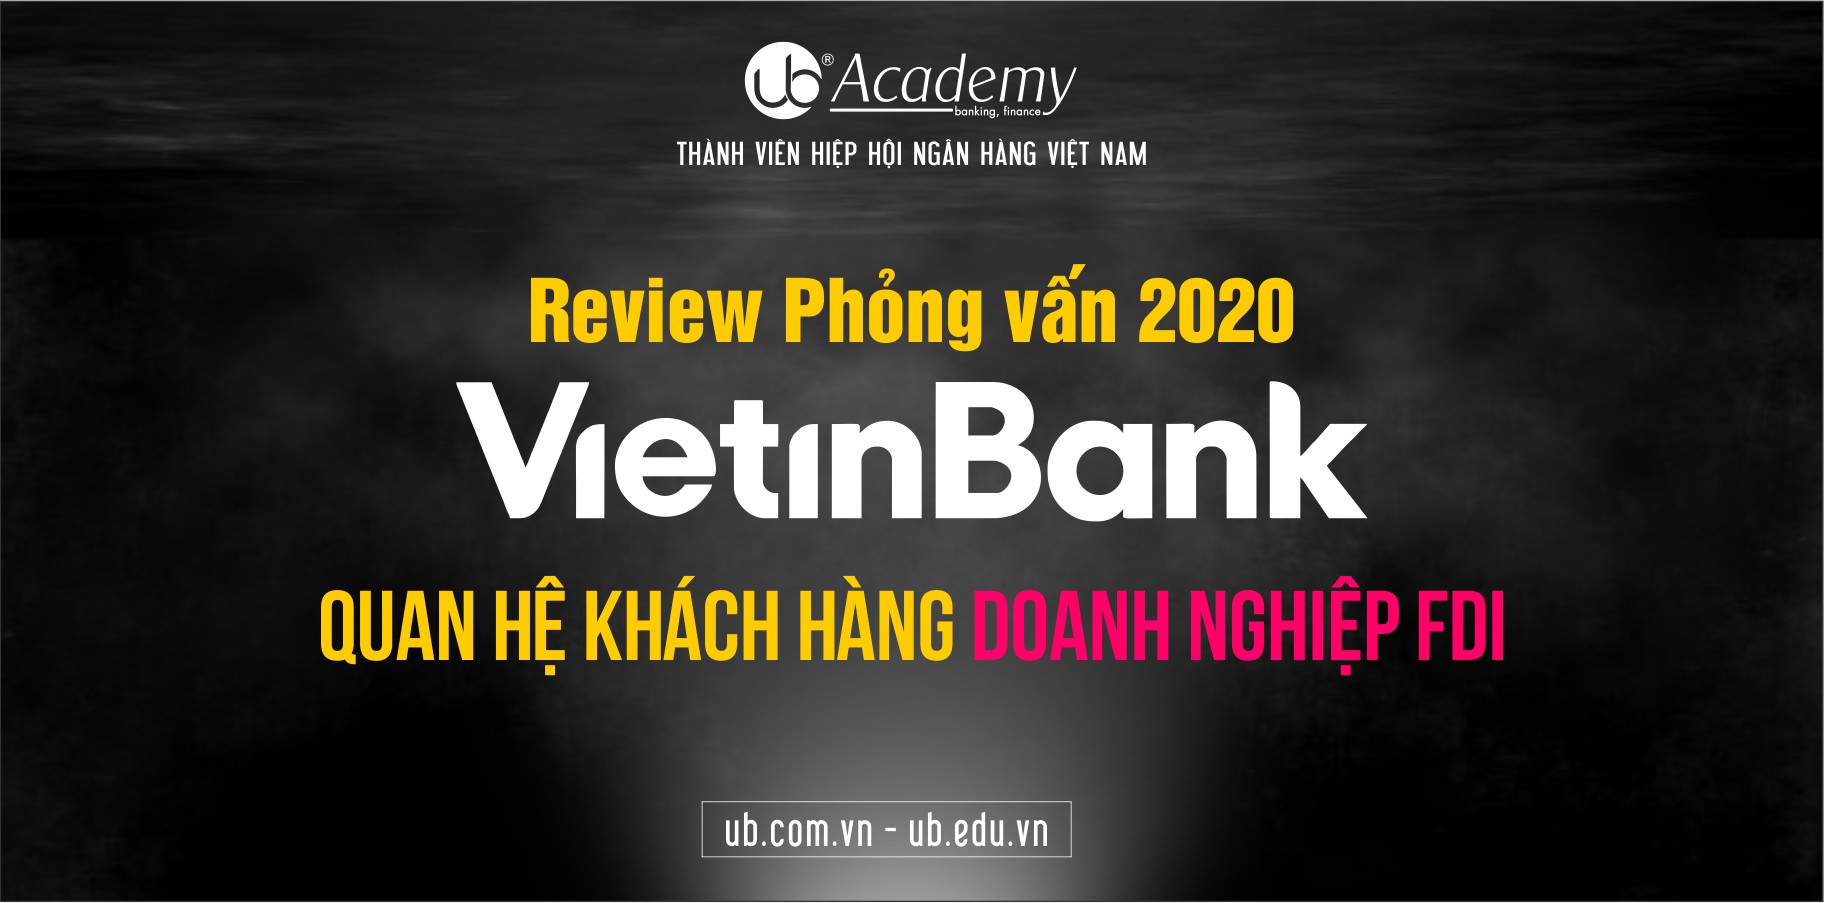 ub.com VietinBank FDI.jpg